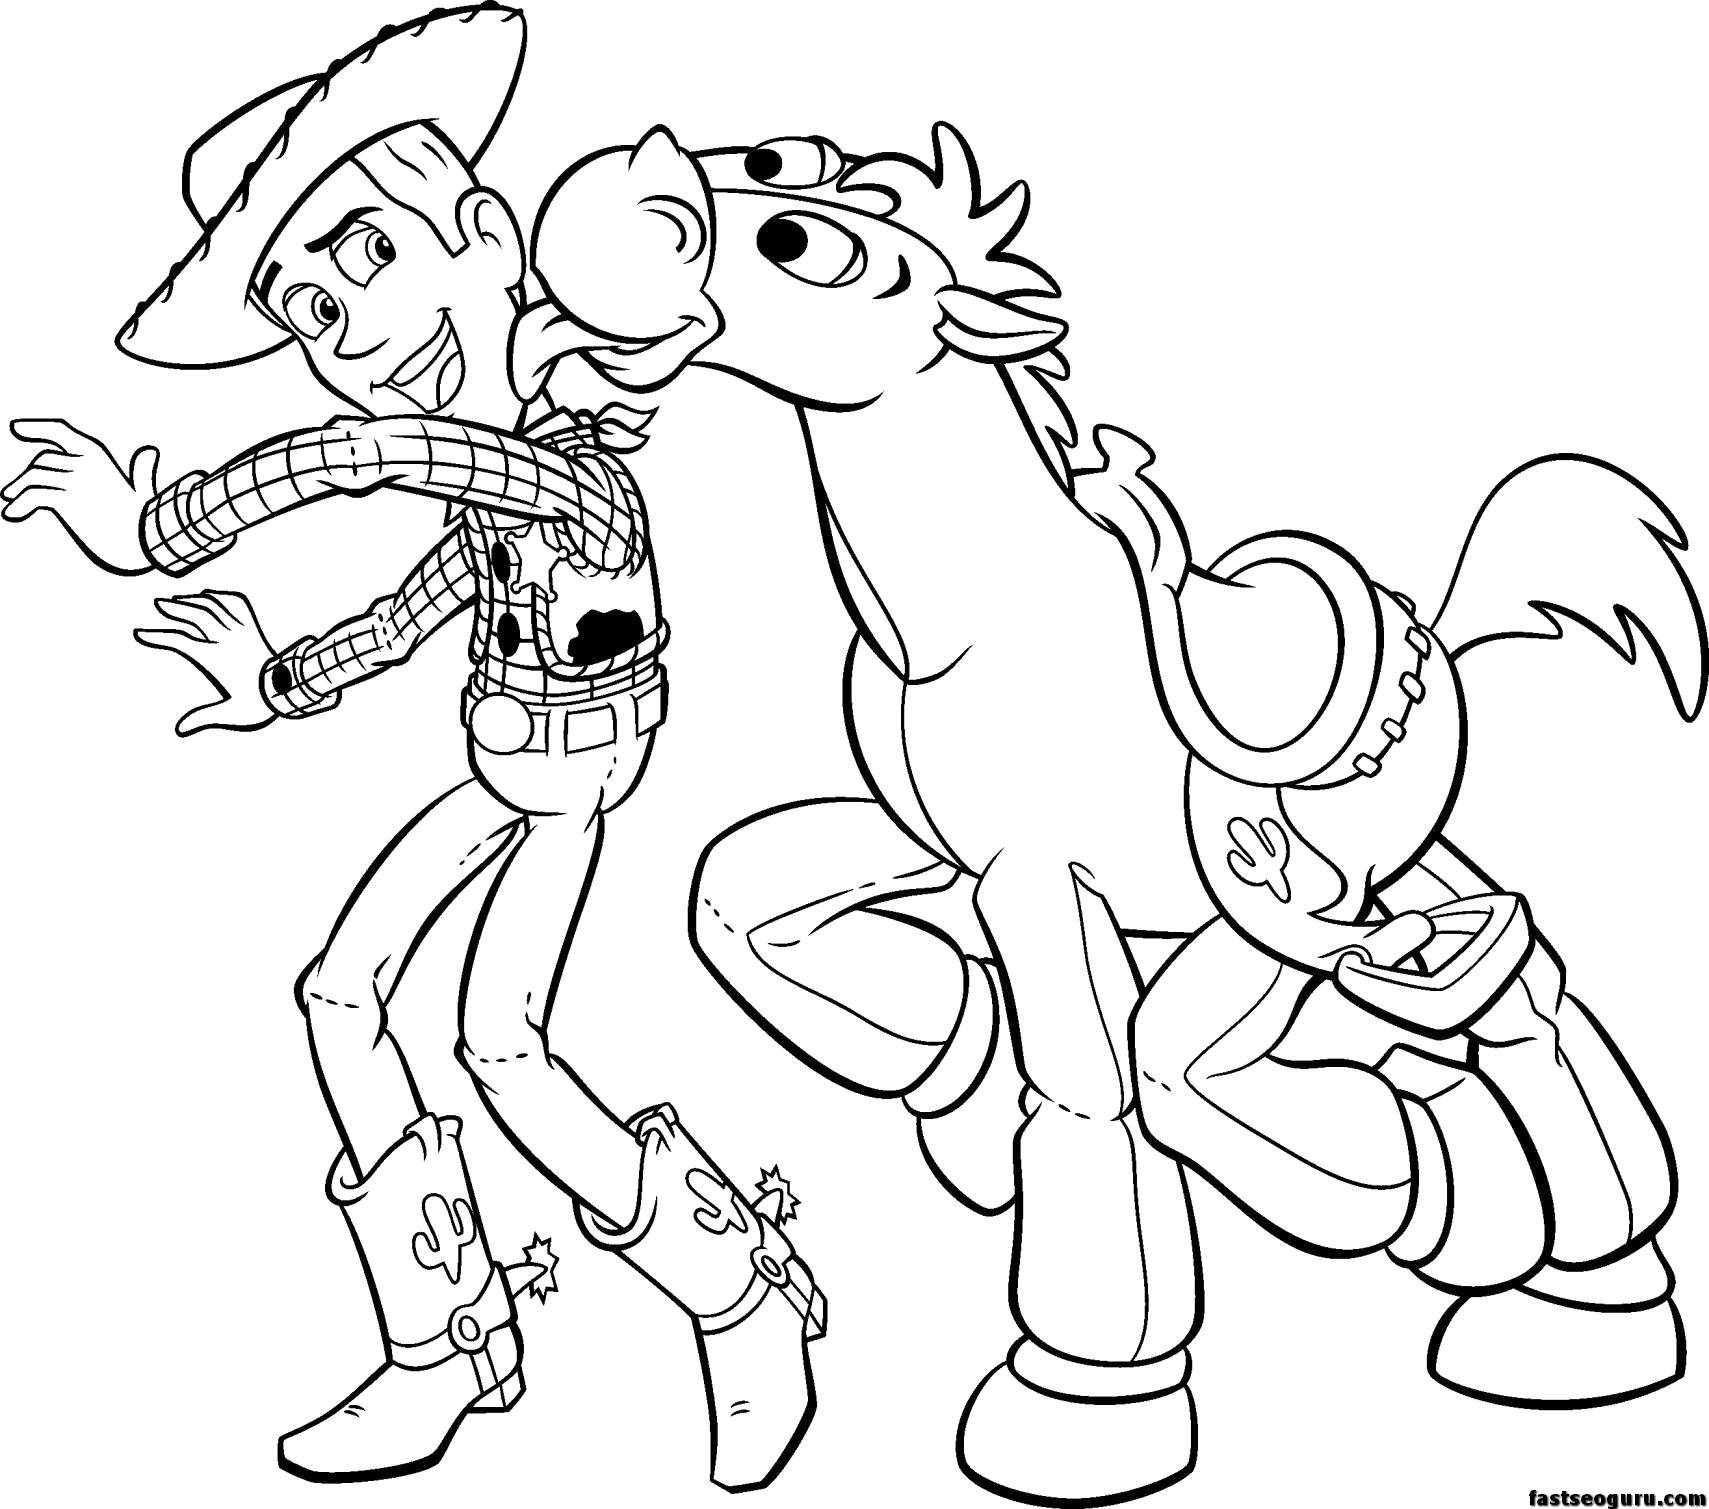 Розмальовки  Шериф вуді з конем. Завантажити розмальовку Персонаж з мультфільму, Історія іграшок .  Роздрукувати ,розмальовки,